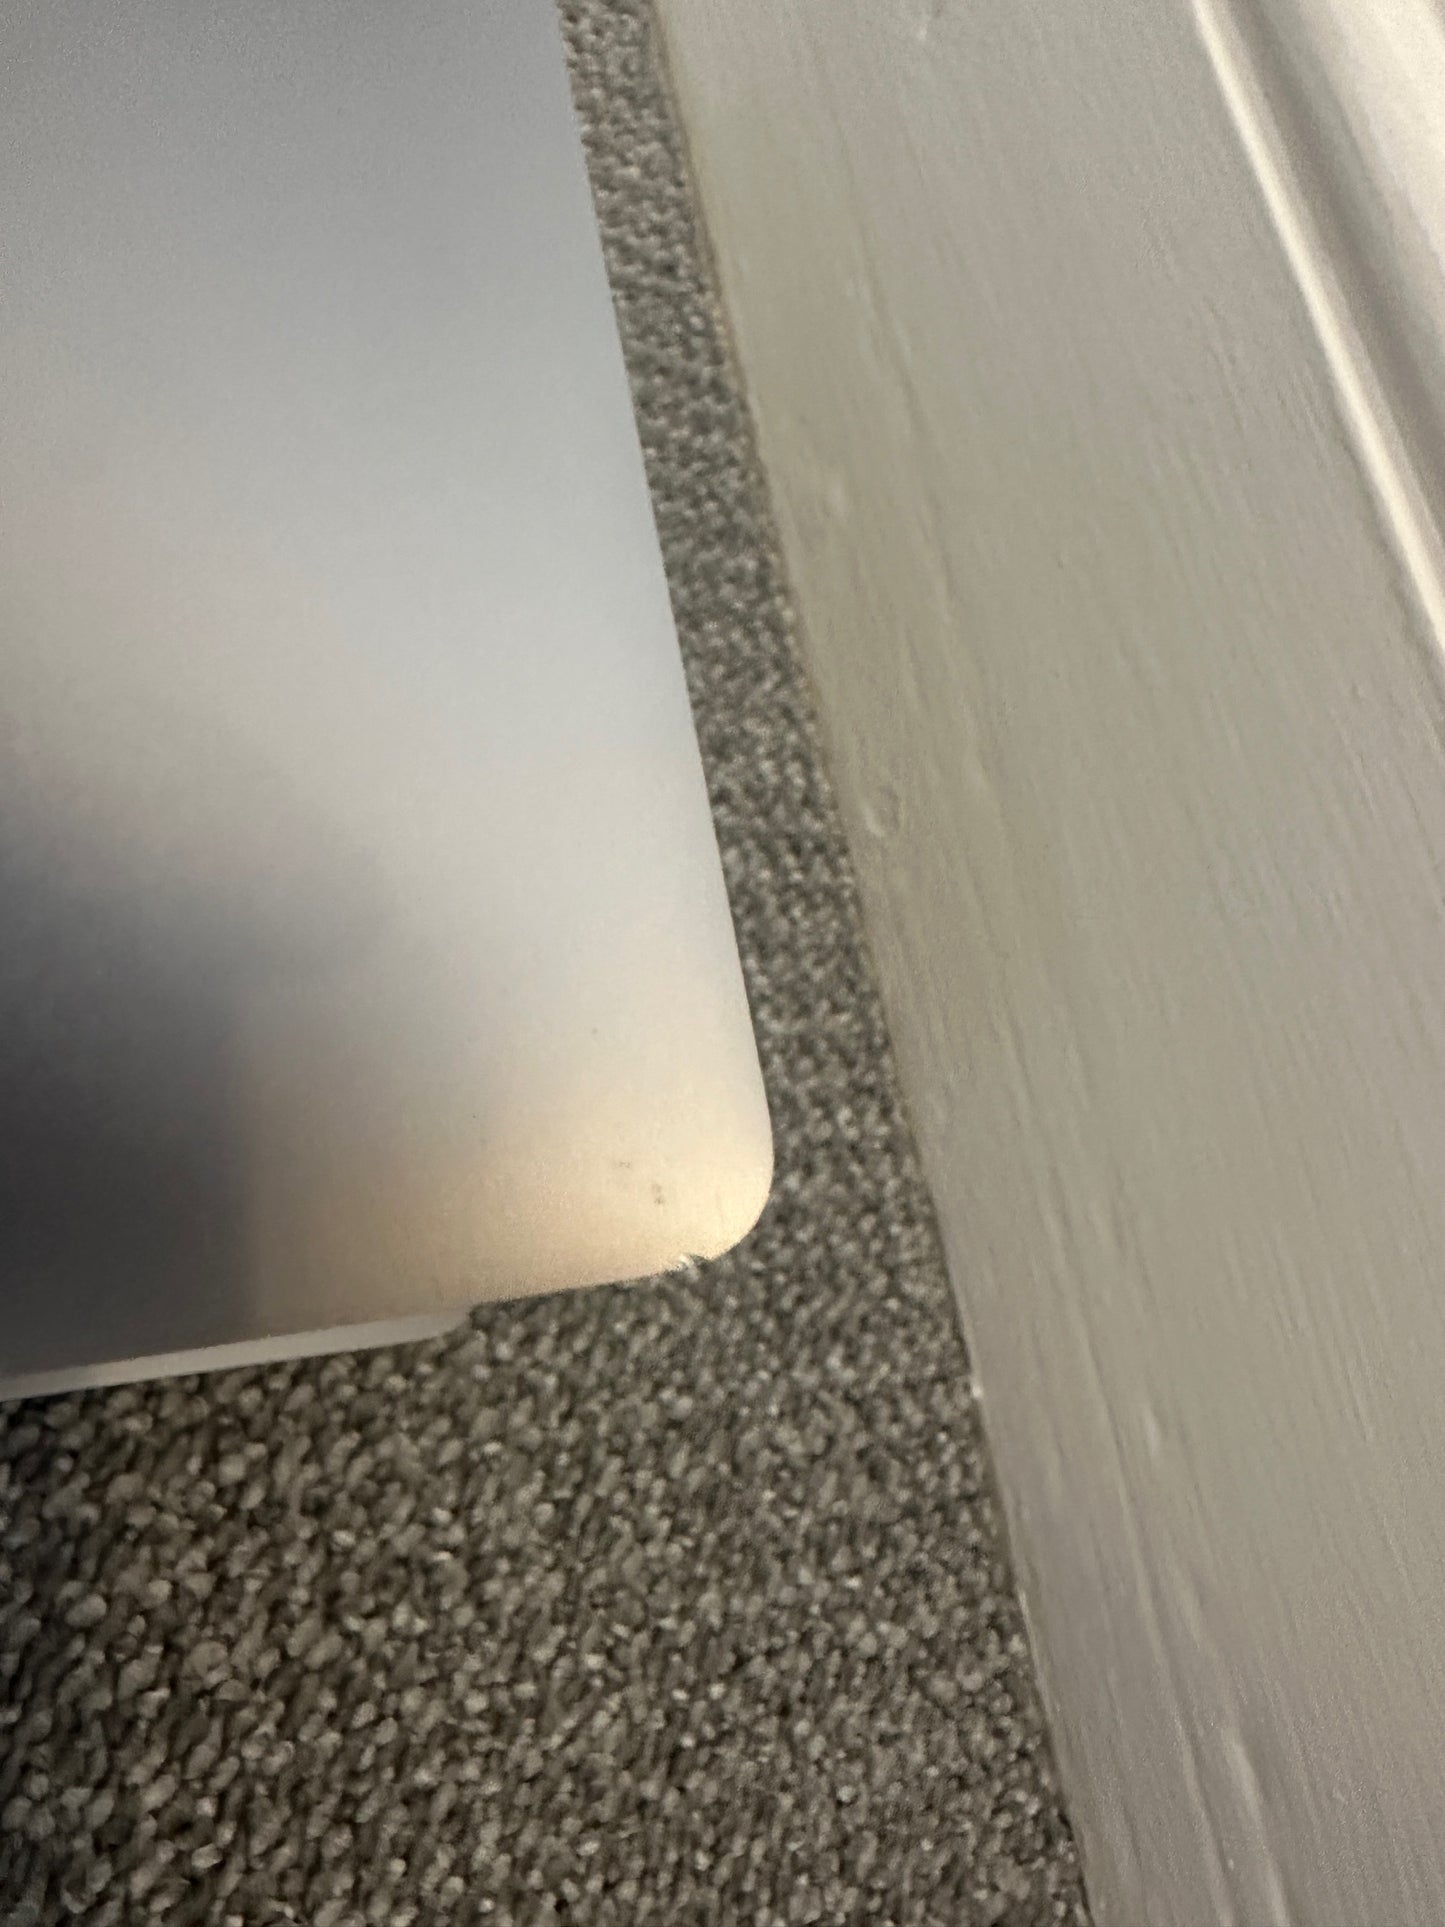 MacBook Air Intel i5 1.6GHz, 16gb, 512gb, 13-inch (2019) - Space Grey - GRADE B